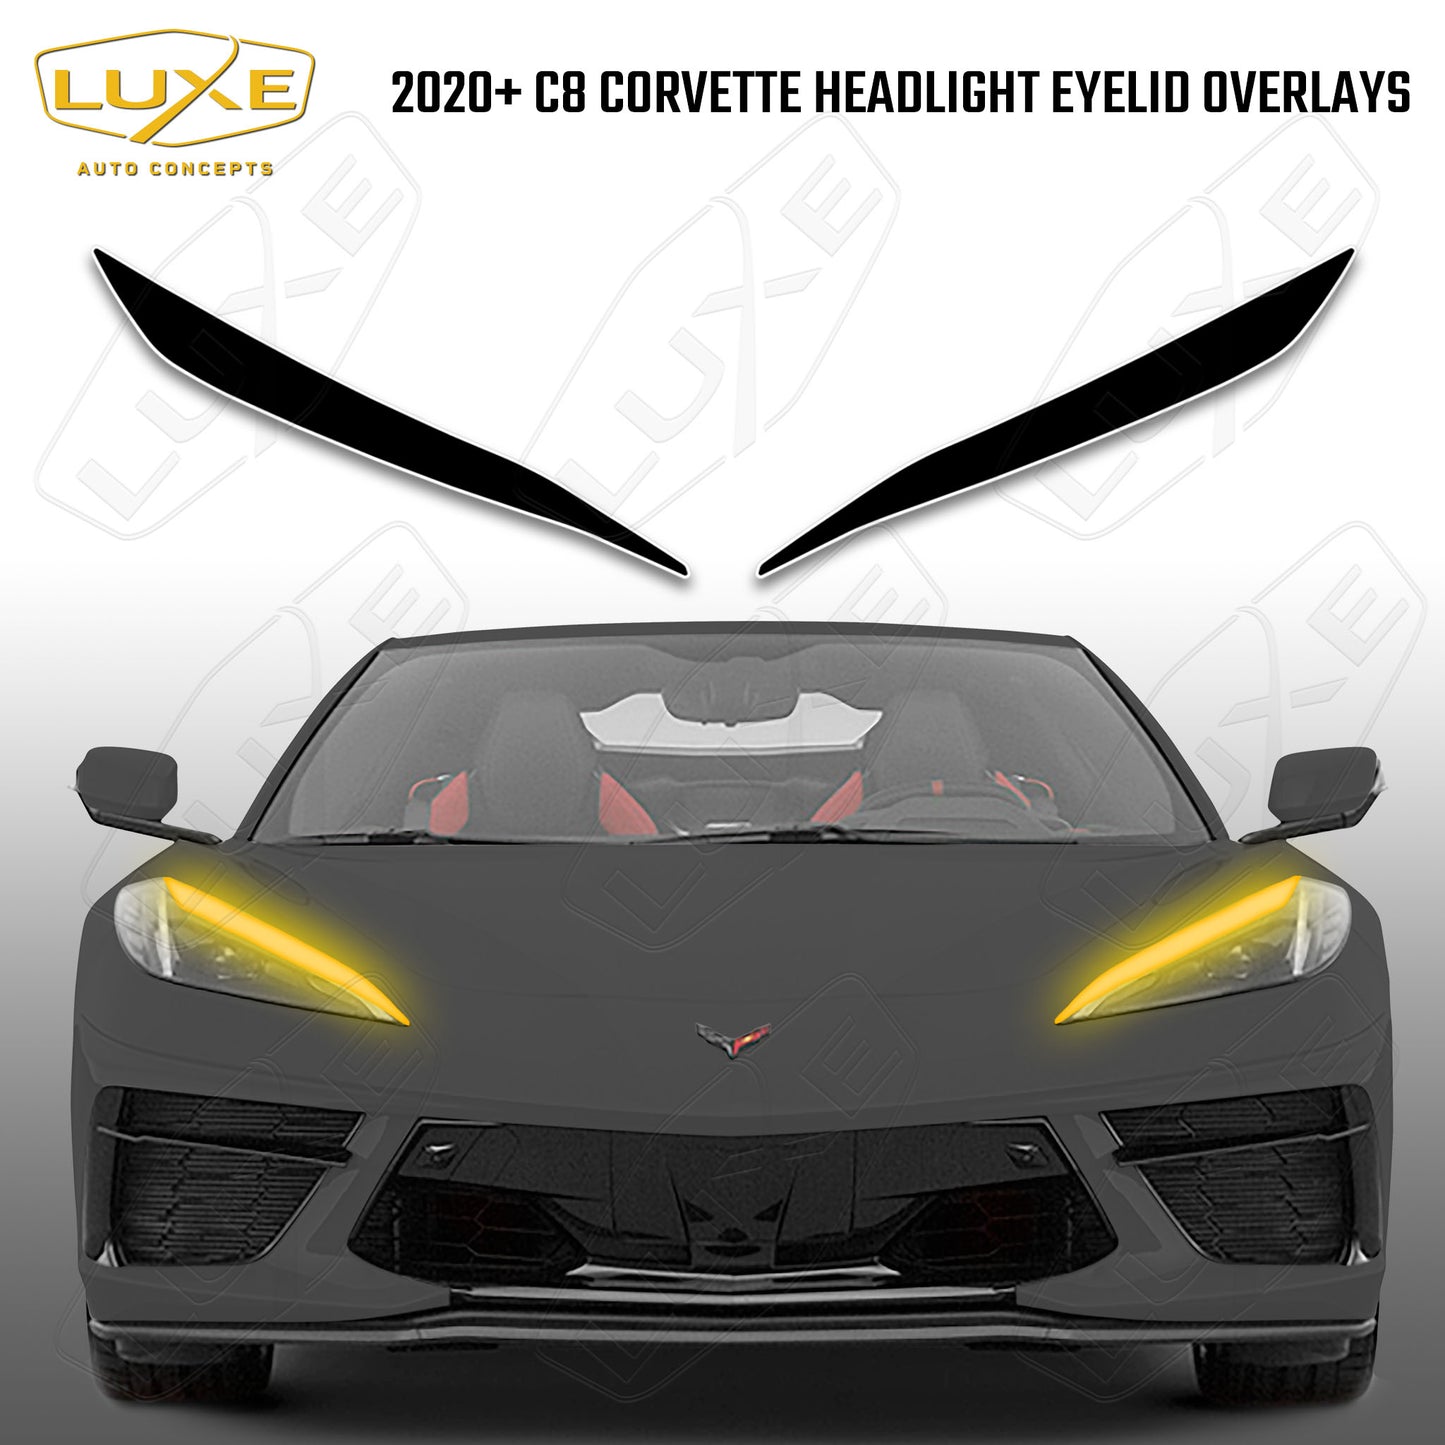 2020+ C8 Corvette Headlight Eyelid Overlays